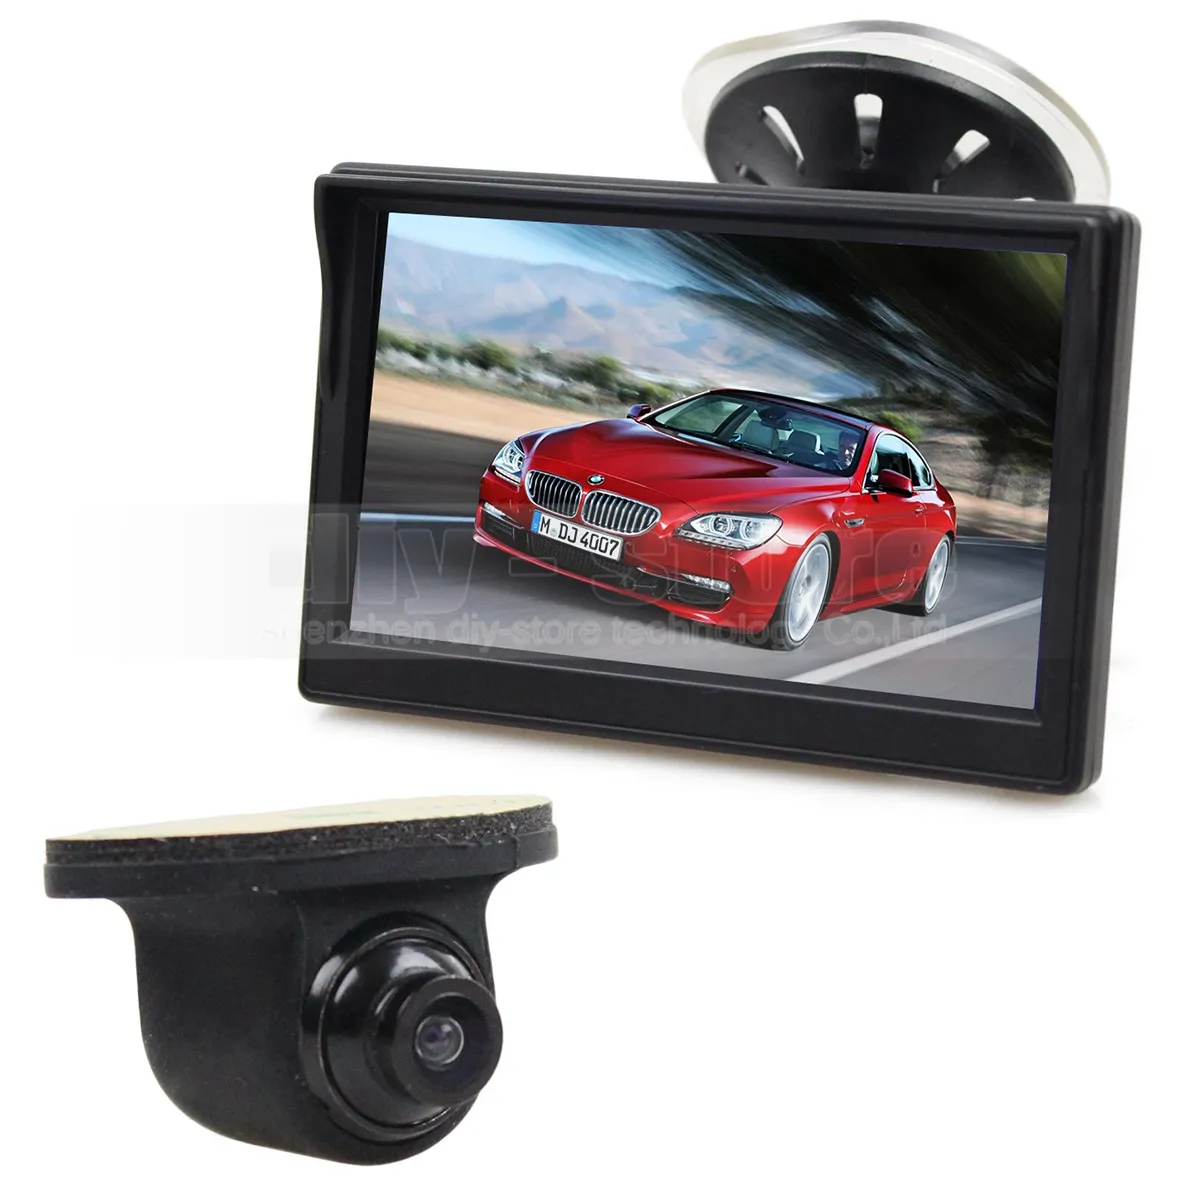 Monitor de coche de visión trasera LCD de 5 pulgadas + cámara de visión trasera de Color CCD impermeable para sistema de asistencia de estacionamiento